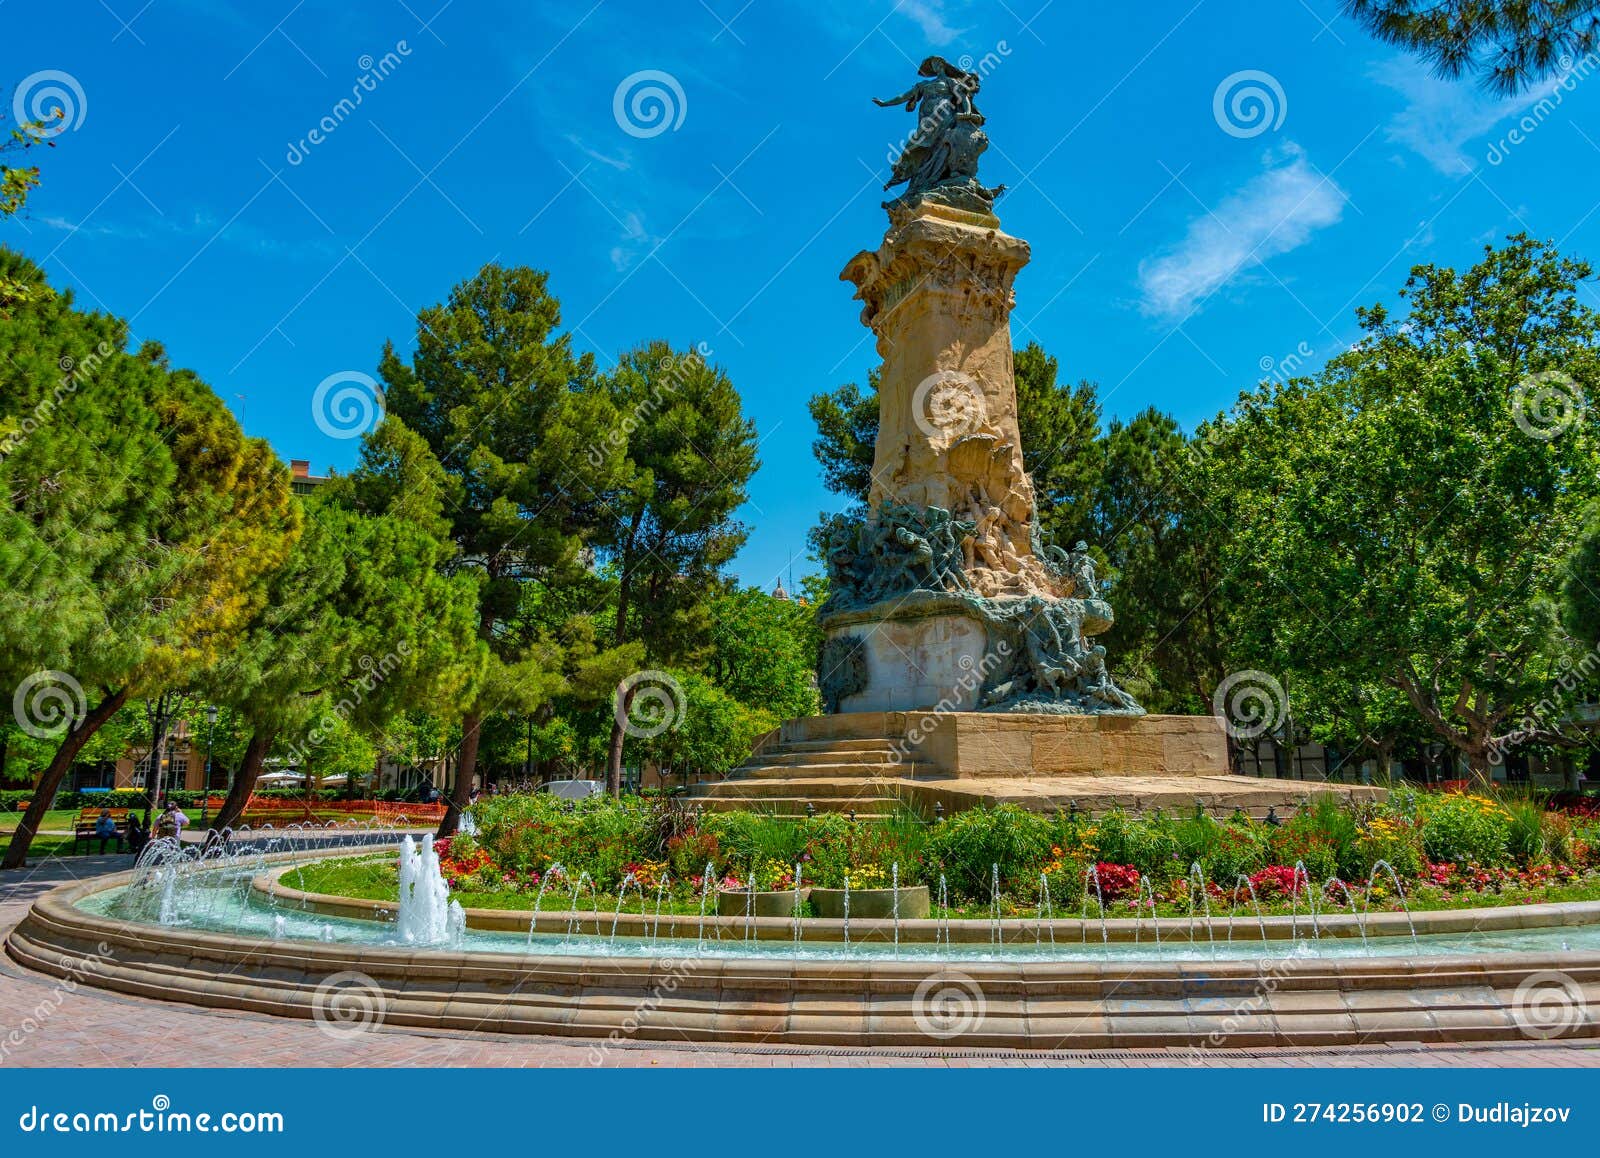 plaza de los sitios park in spanish town zaragoza